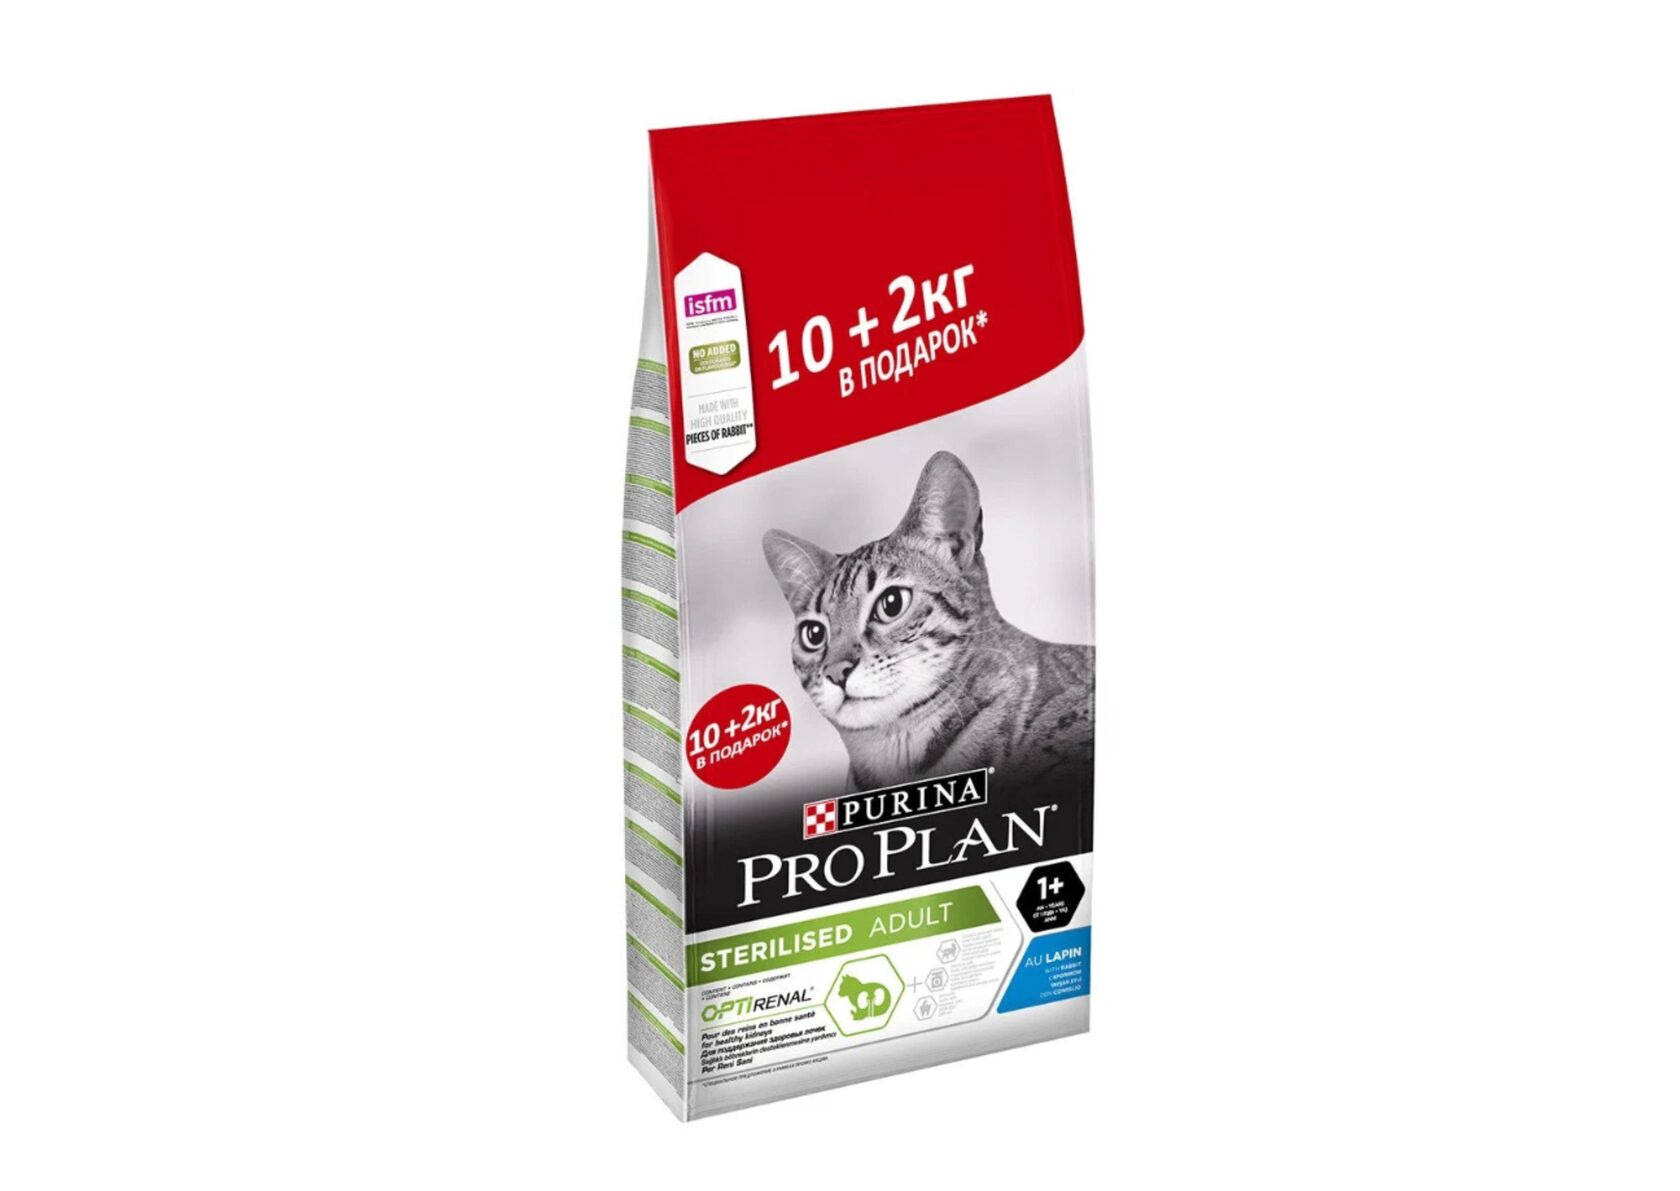 Pro plan для кошек стерилизованных 10. Pro Plan Sterilised для кошек. Проплан 12 кг для кошек. Проплан для котят Деликат индейка 10 +2 кг. Проплан индейка 10+2 кг для кошек.